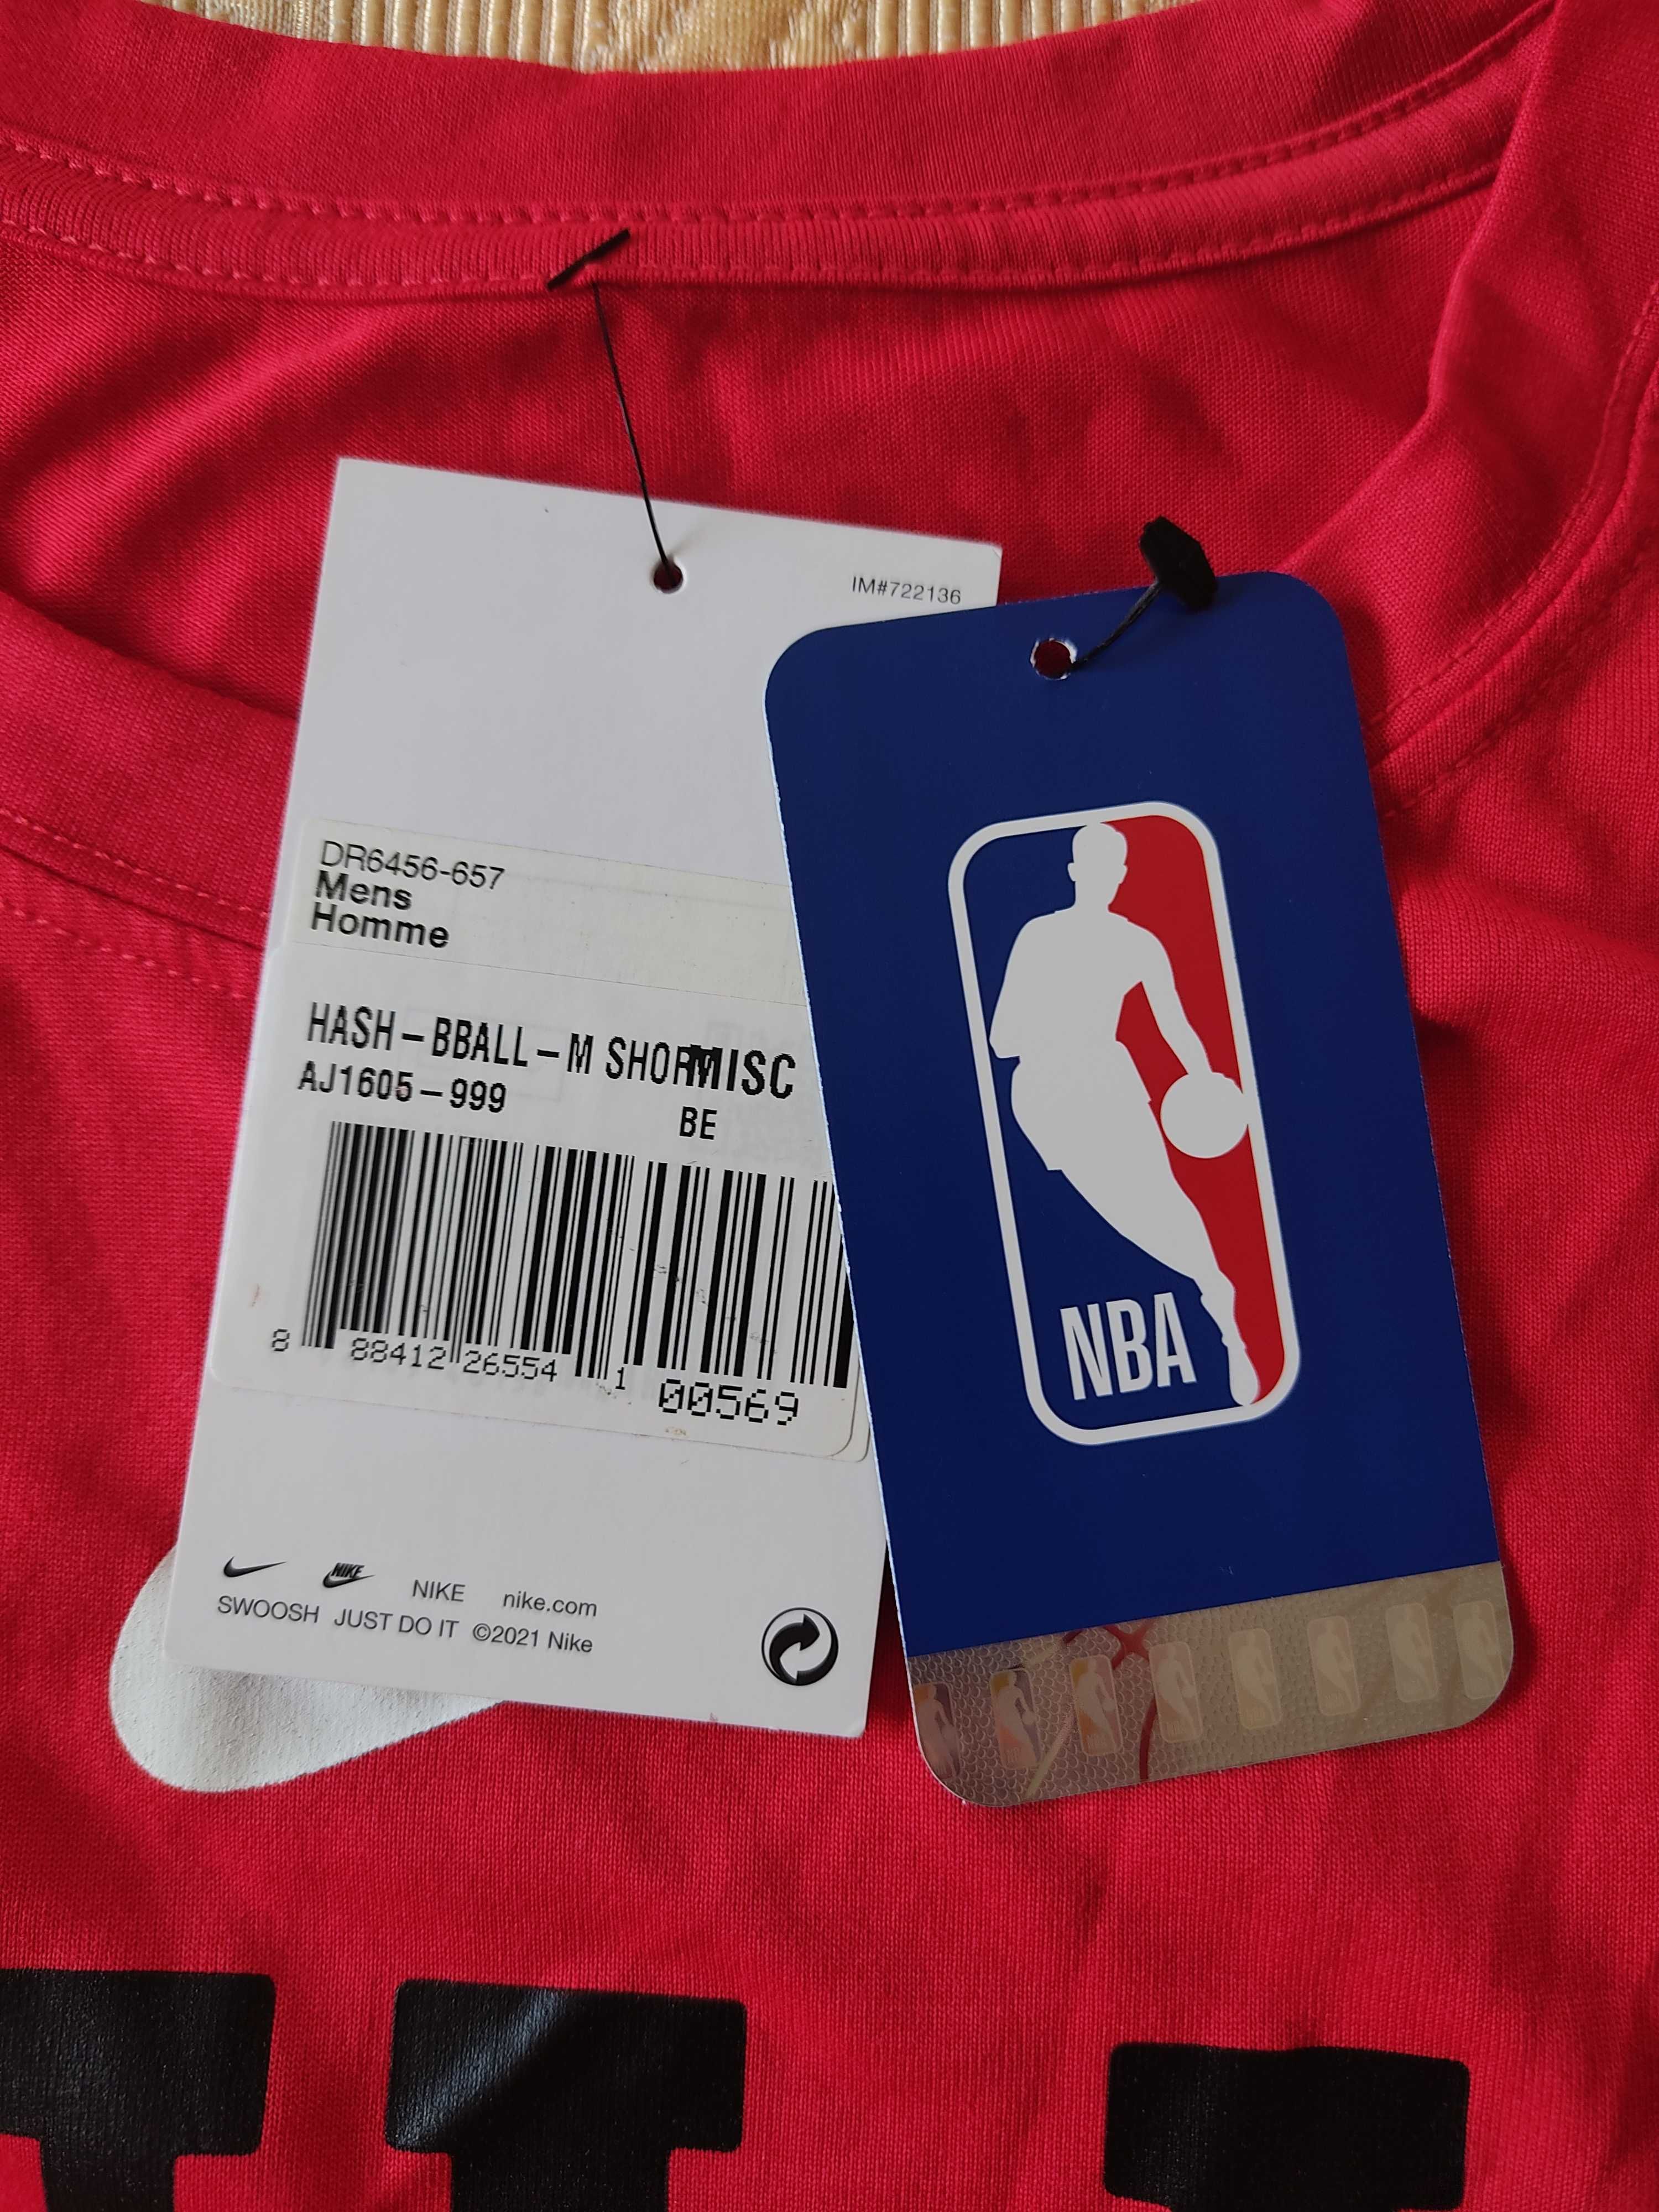 Nike Sportswear | T-Shirt | "Bulls Basketball"